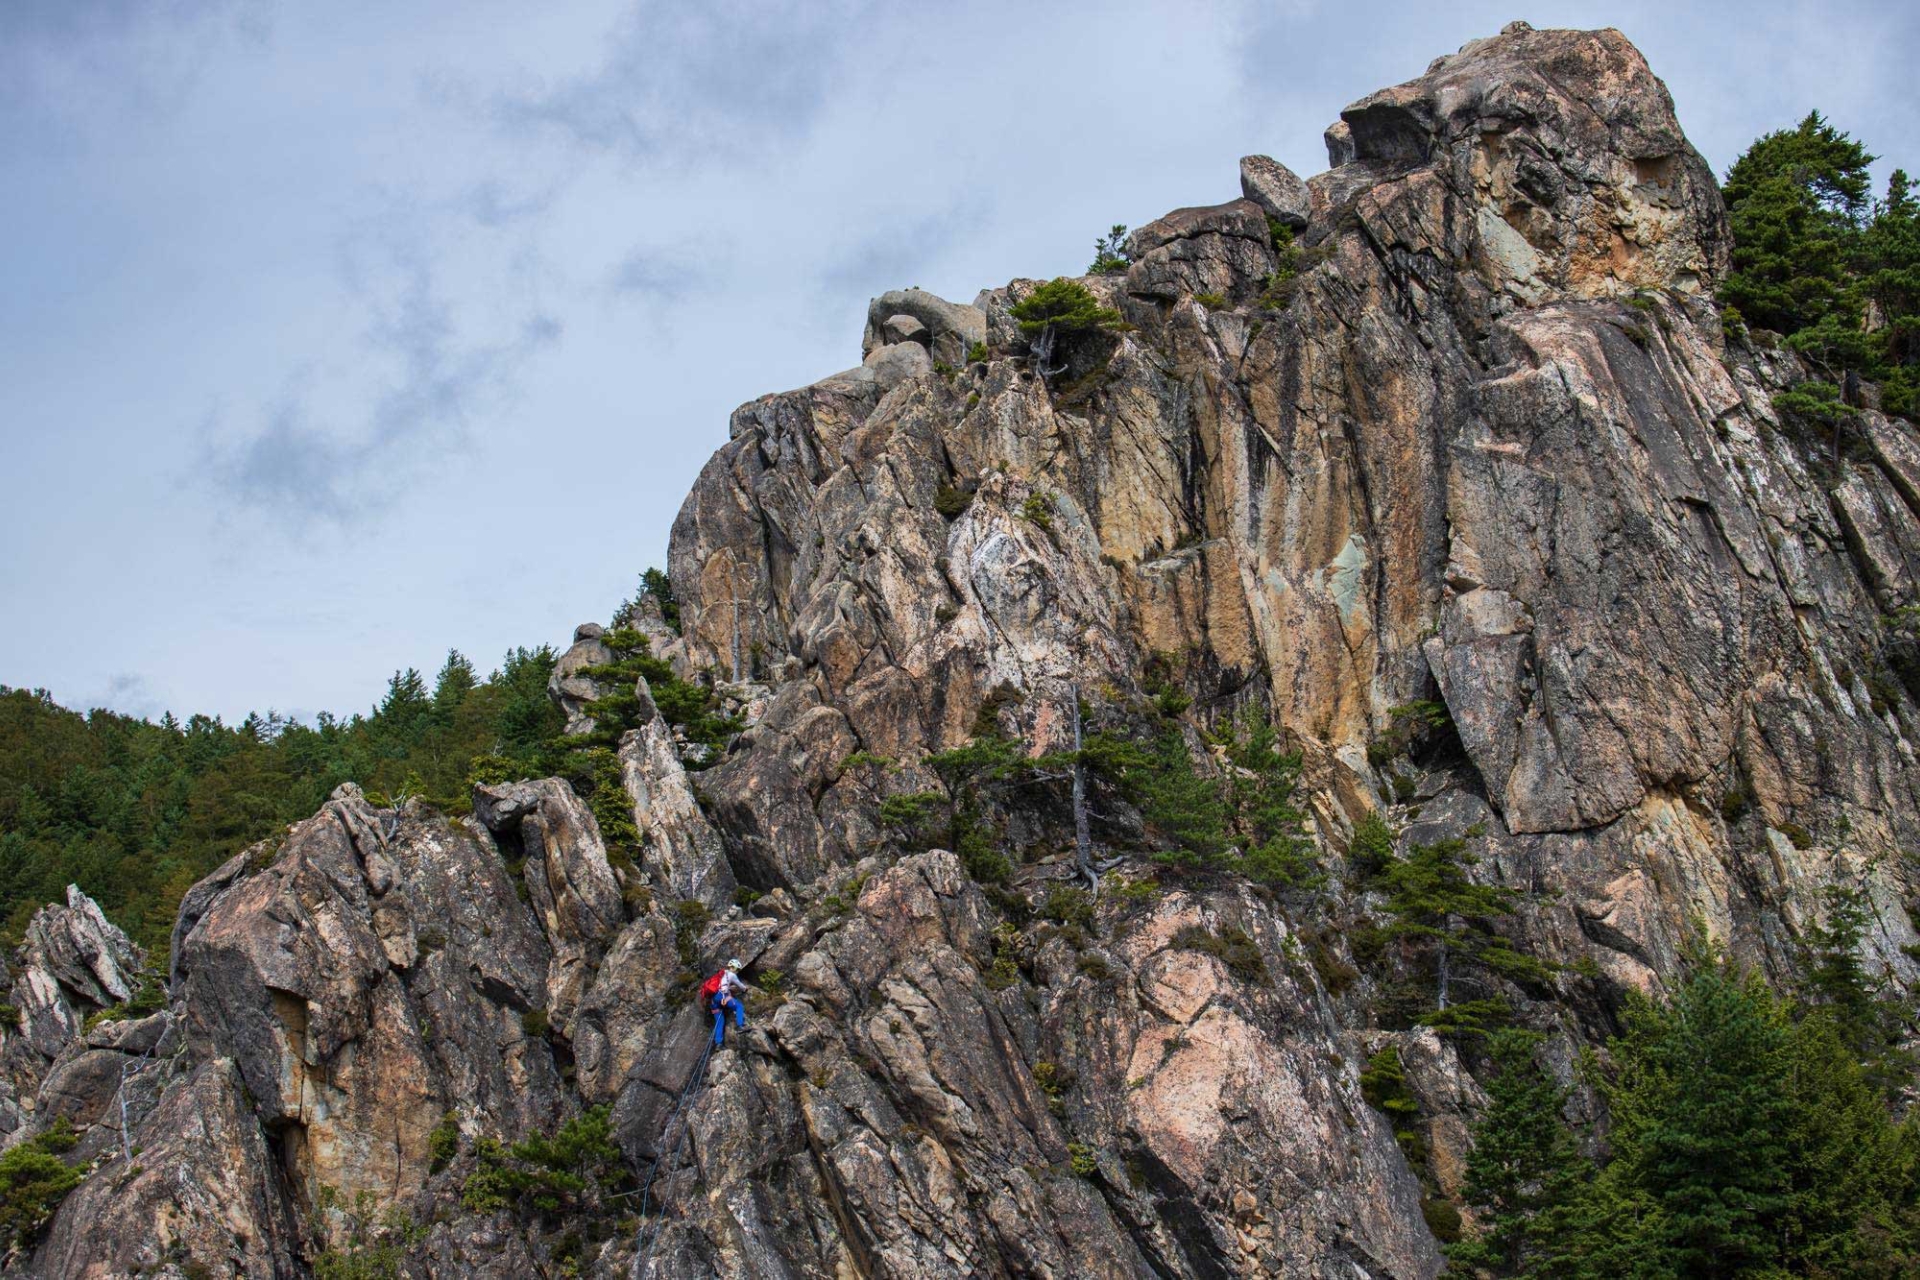 登りやすいけれど、落ちたらただでは済まない高度感がヒヤヒヤさせるリッジ。クライミングの裾野を広げるという意味ではまだまだ可能性を秘めた岩峰群である。